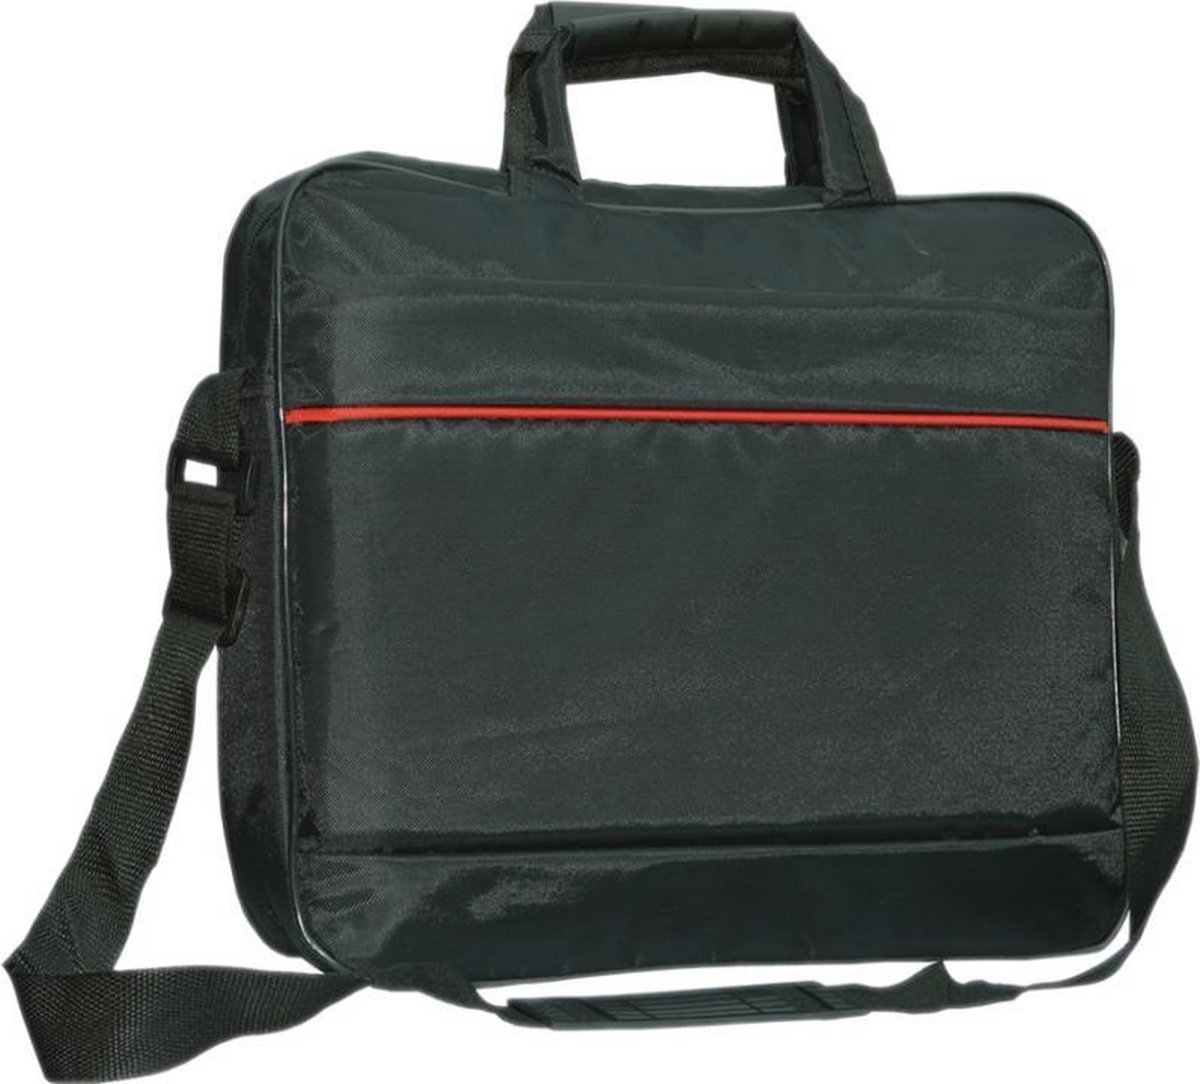 Asus Zenbook Ux301la C4005h laptoptas messenger bag / schoudertas / tas , zwart , merk i12Cover